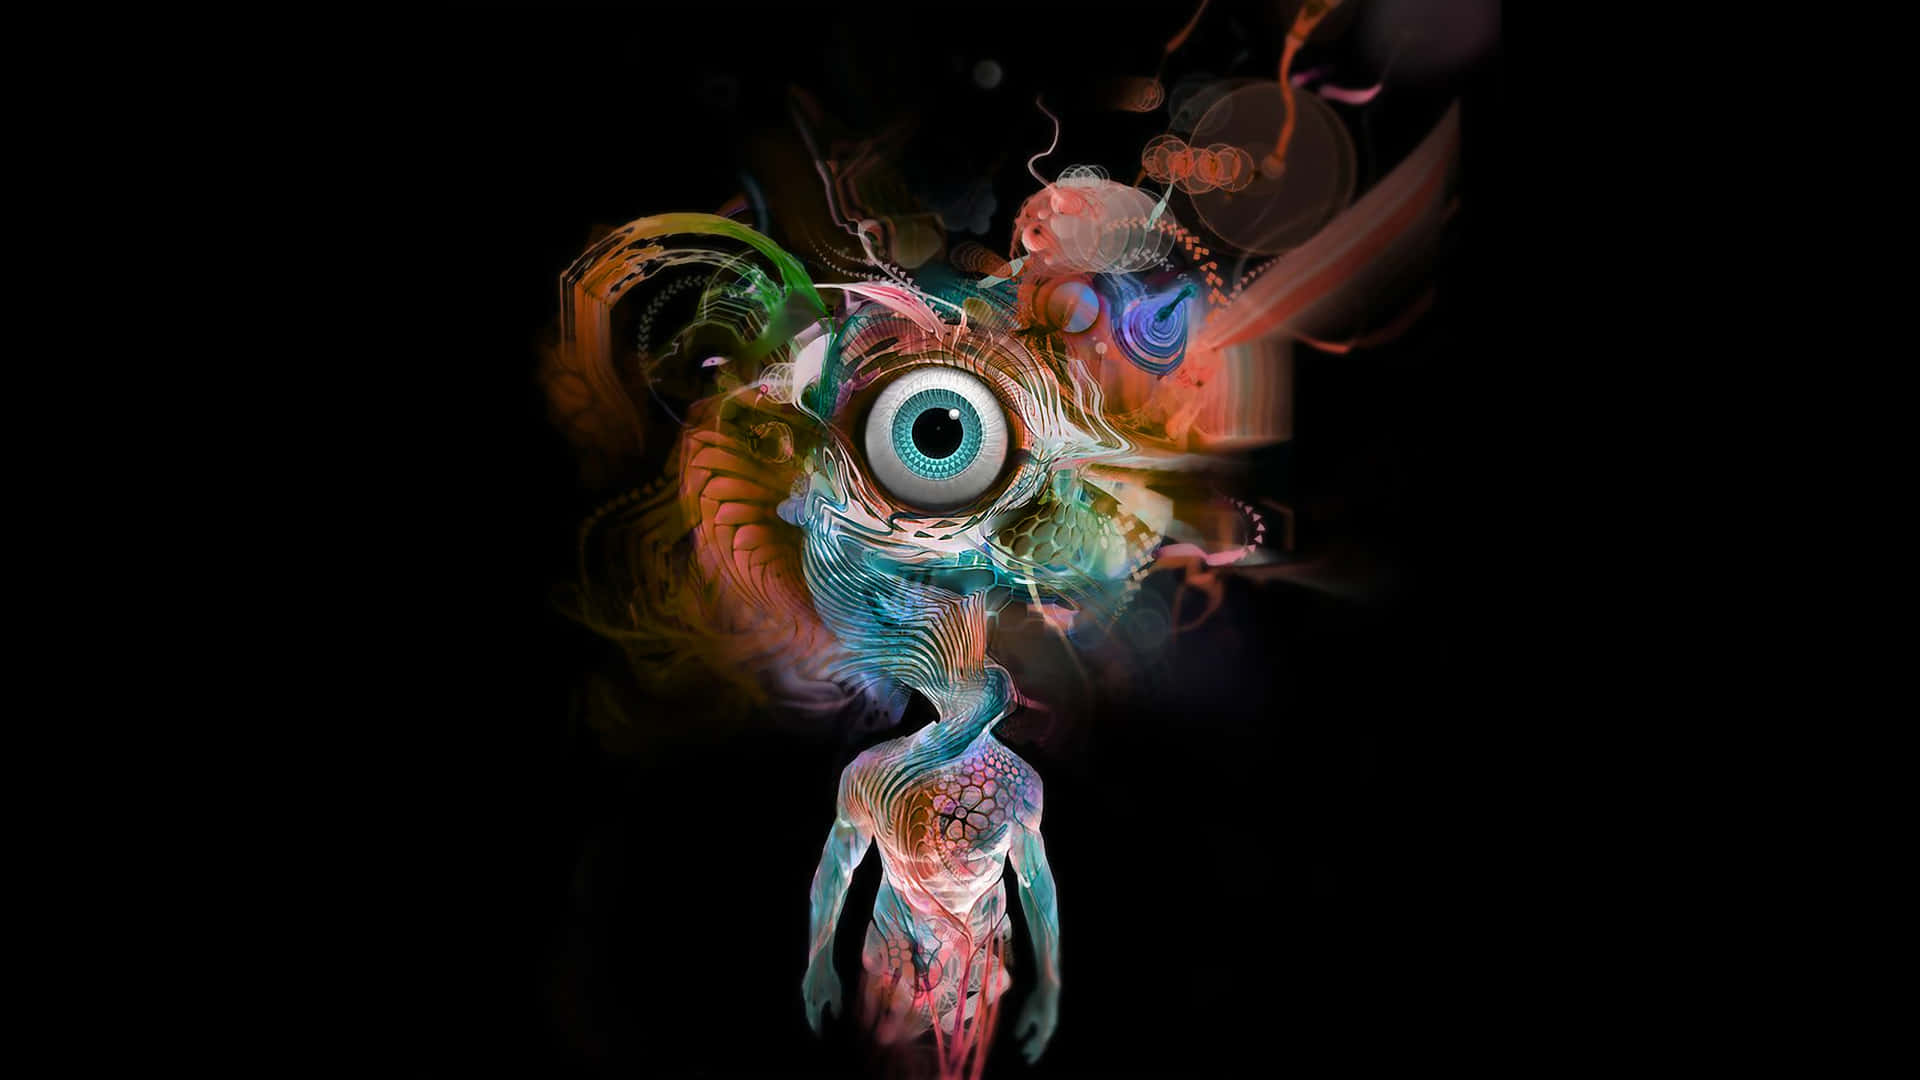 Et farverigt billede af en person med et stort øje stirrende ud fra mørket. Wallpaper